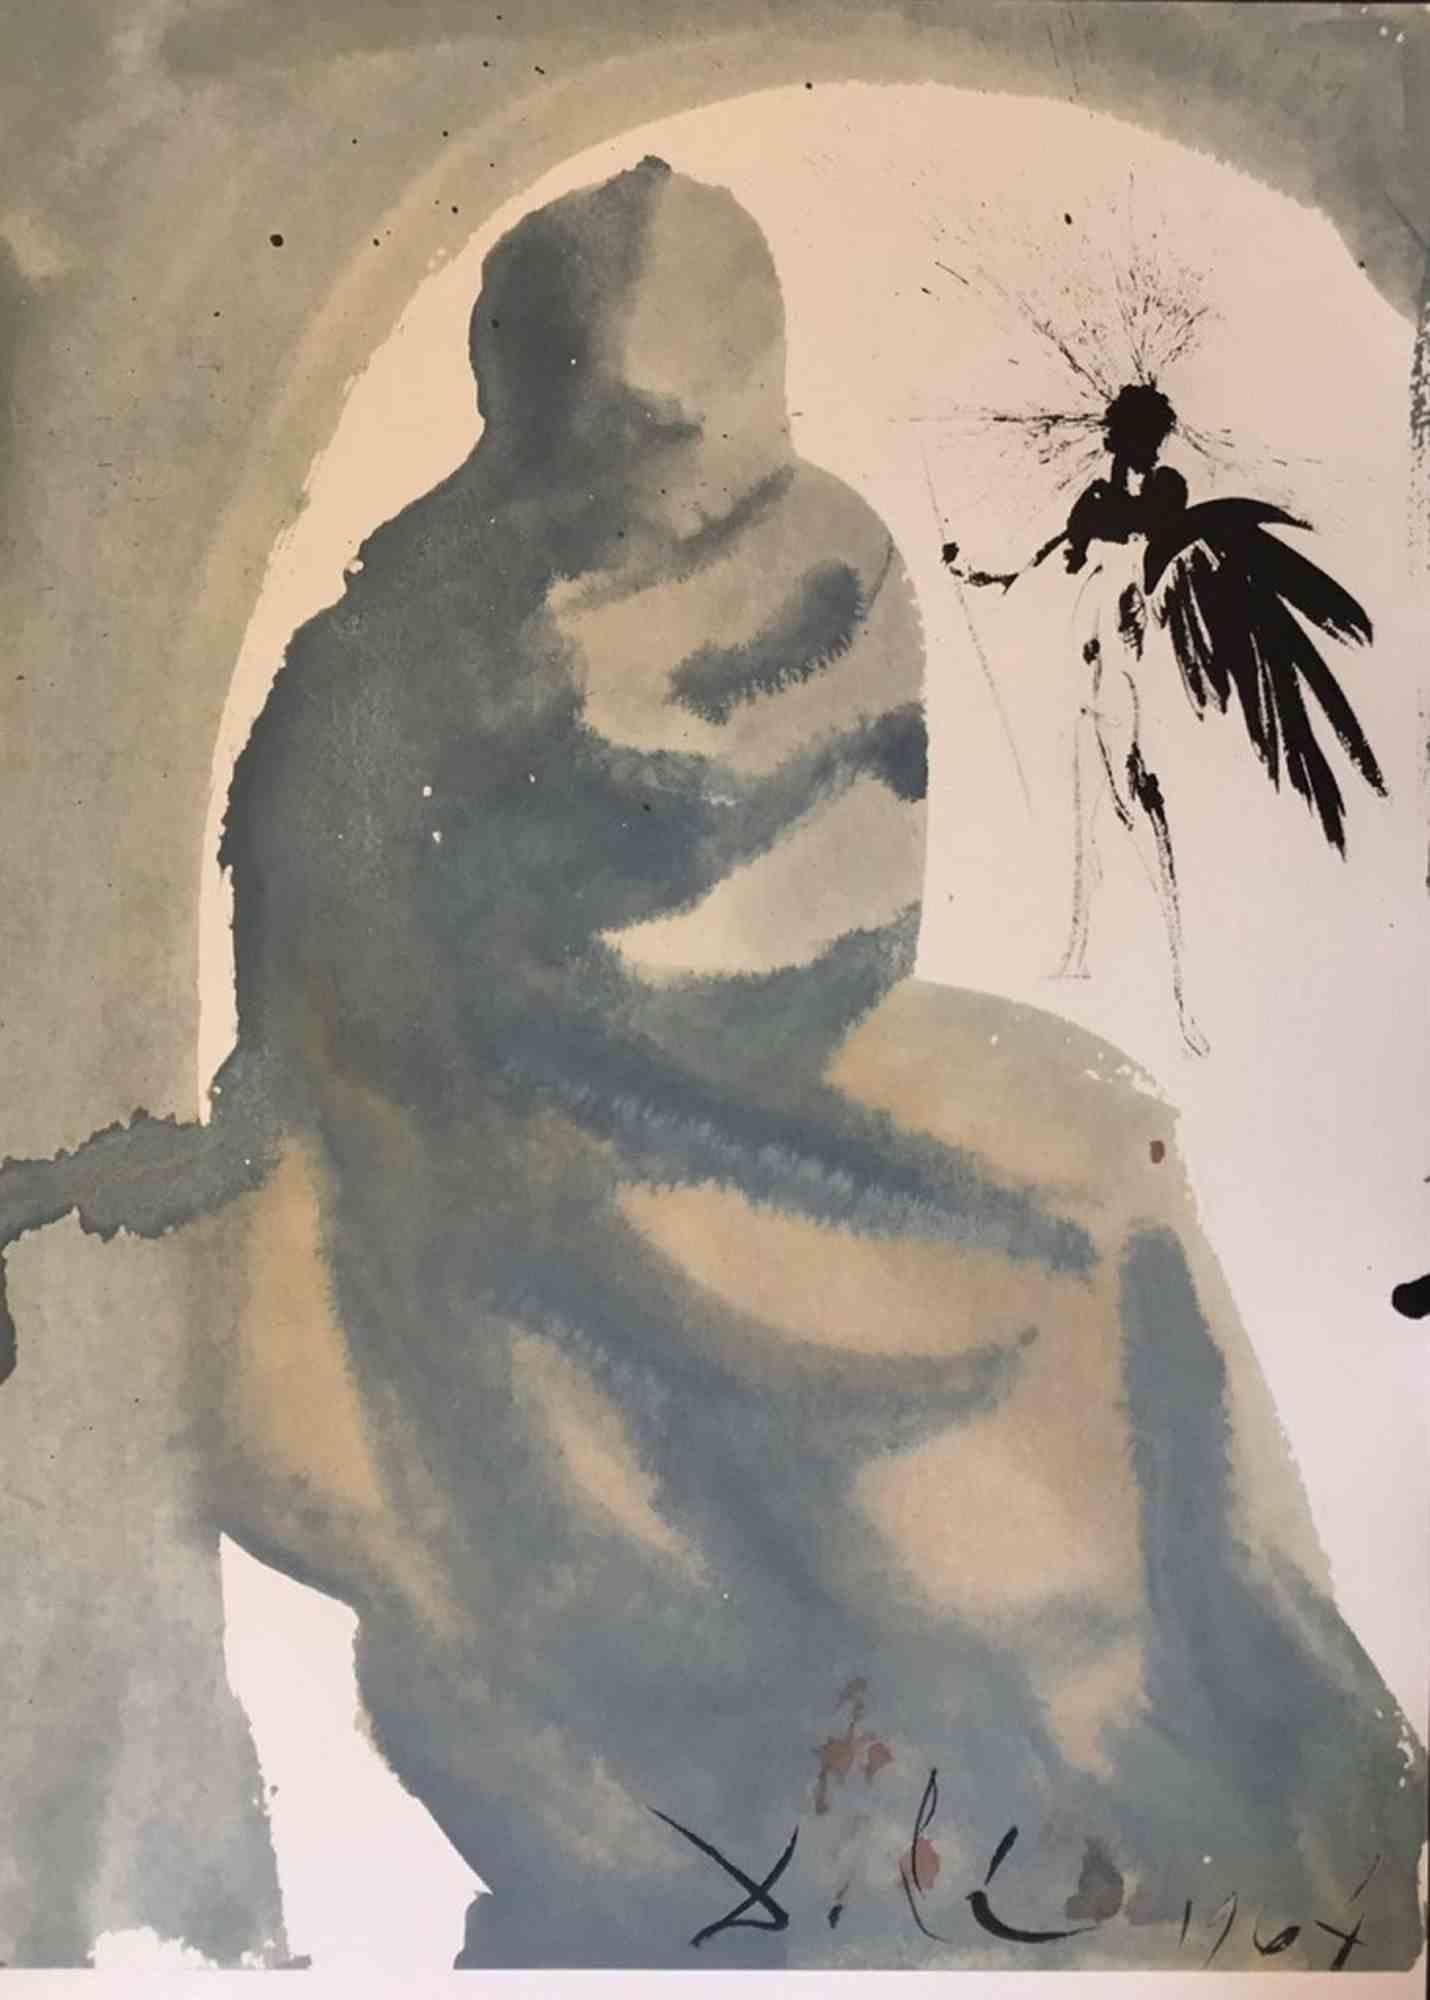 Seduxisti me, domine ("Tu m'as séduit, mon Seigneur") est une œuvre d'art réalisée par Salvador Dalí en 1964. Elle fait partie de la Biblia Sacra vulgatæ editionis publiée par Rizzoli-Mediolani entre 1967 et 1969.
Lithographie en couleur sur papier